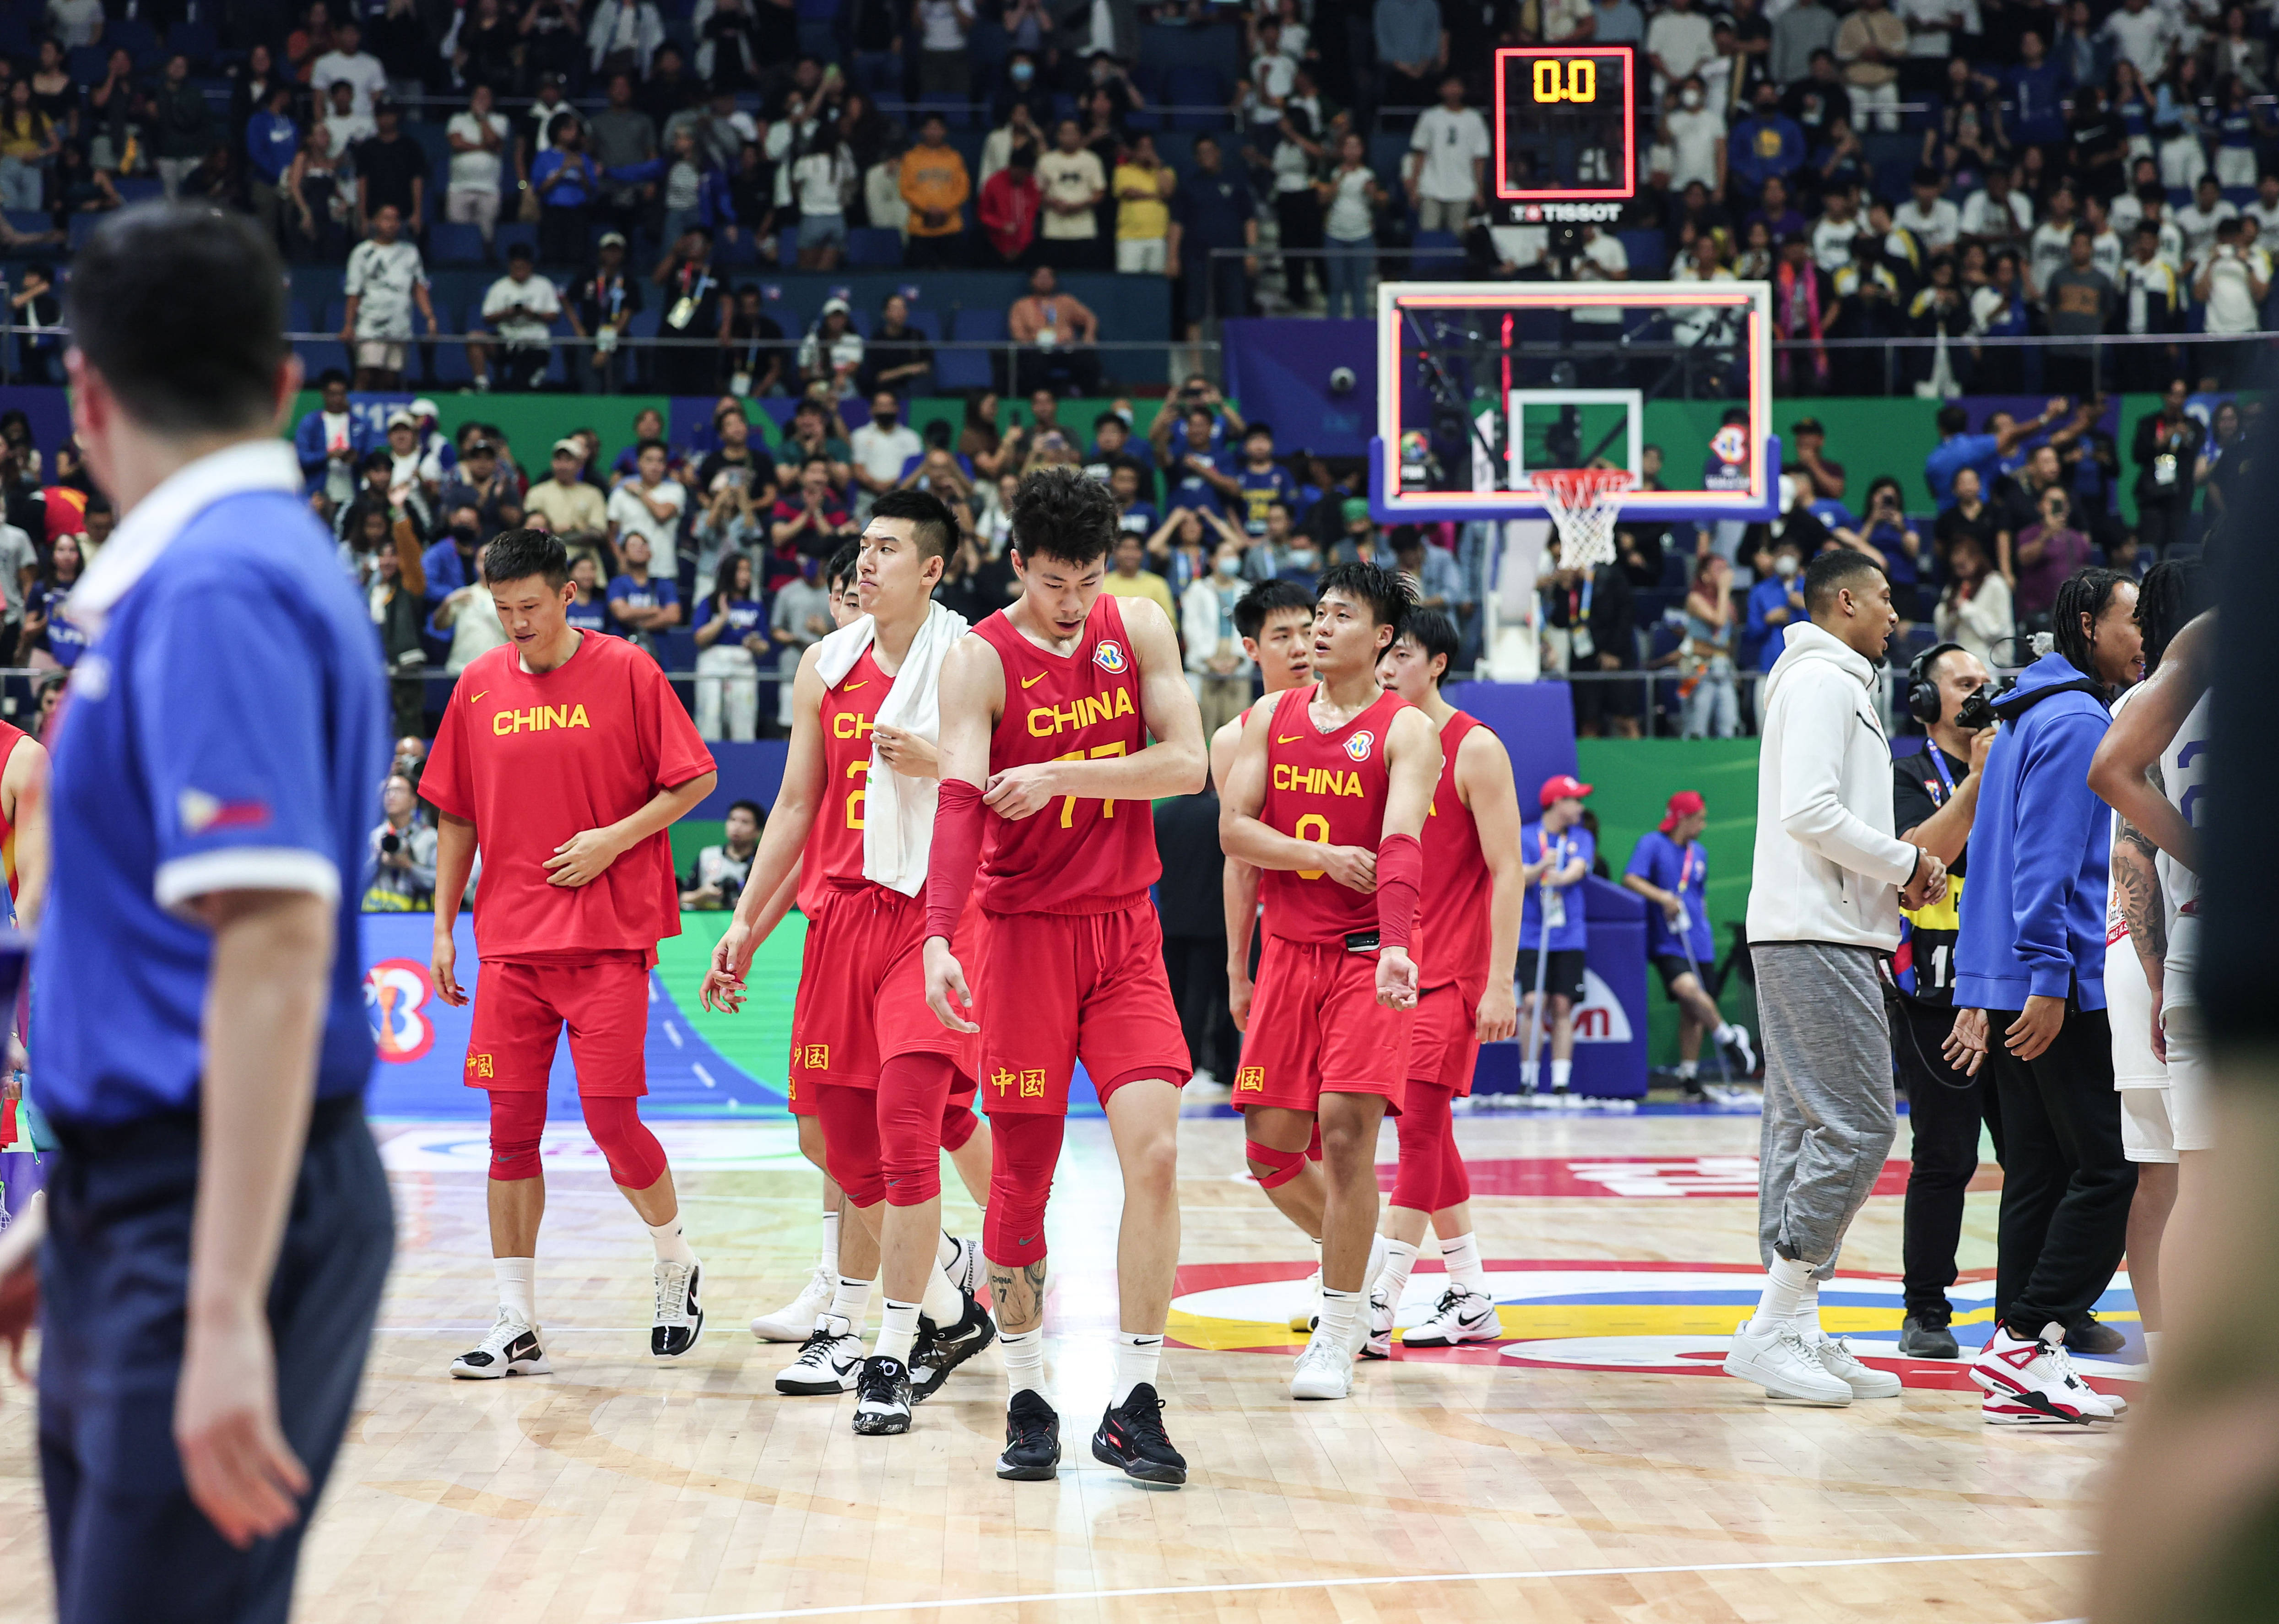 手机薄款:美国男篮重回世界第一 中国队排名第29位